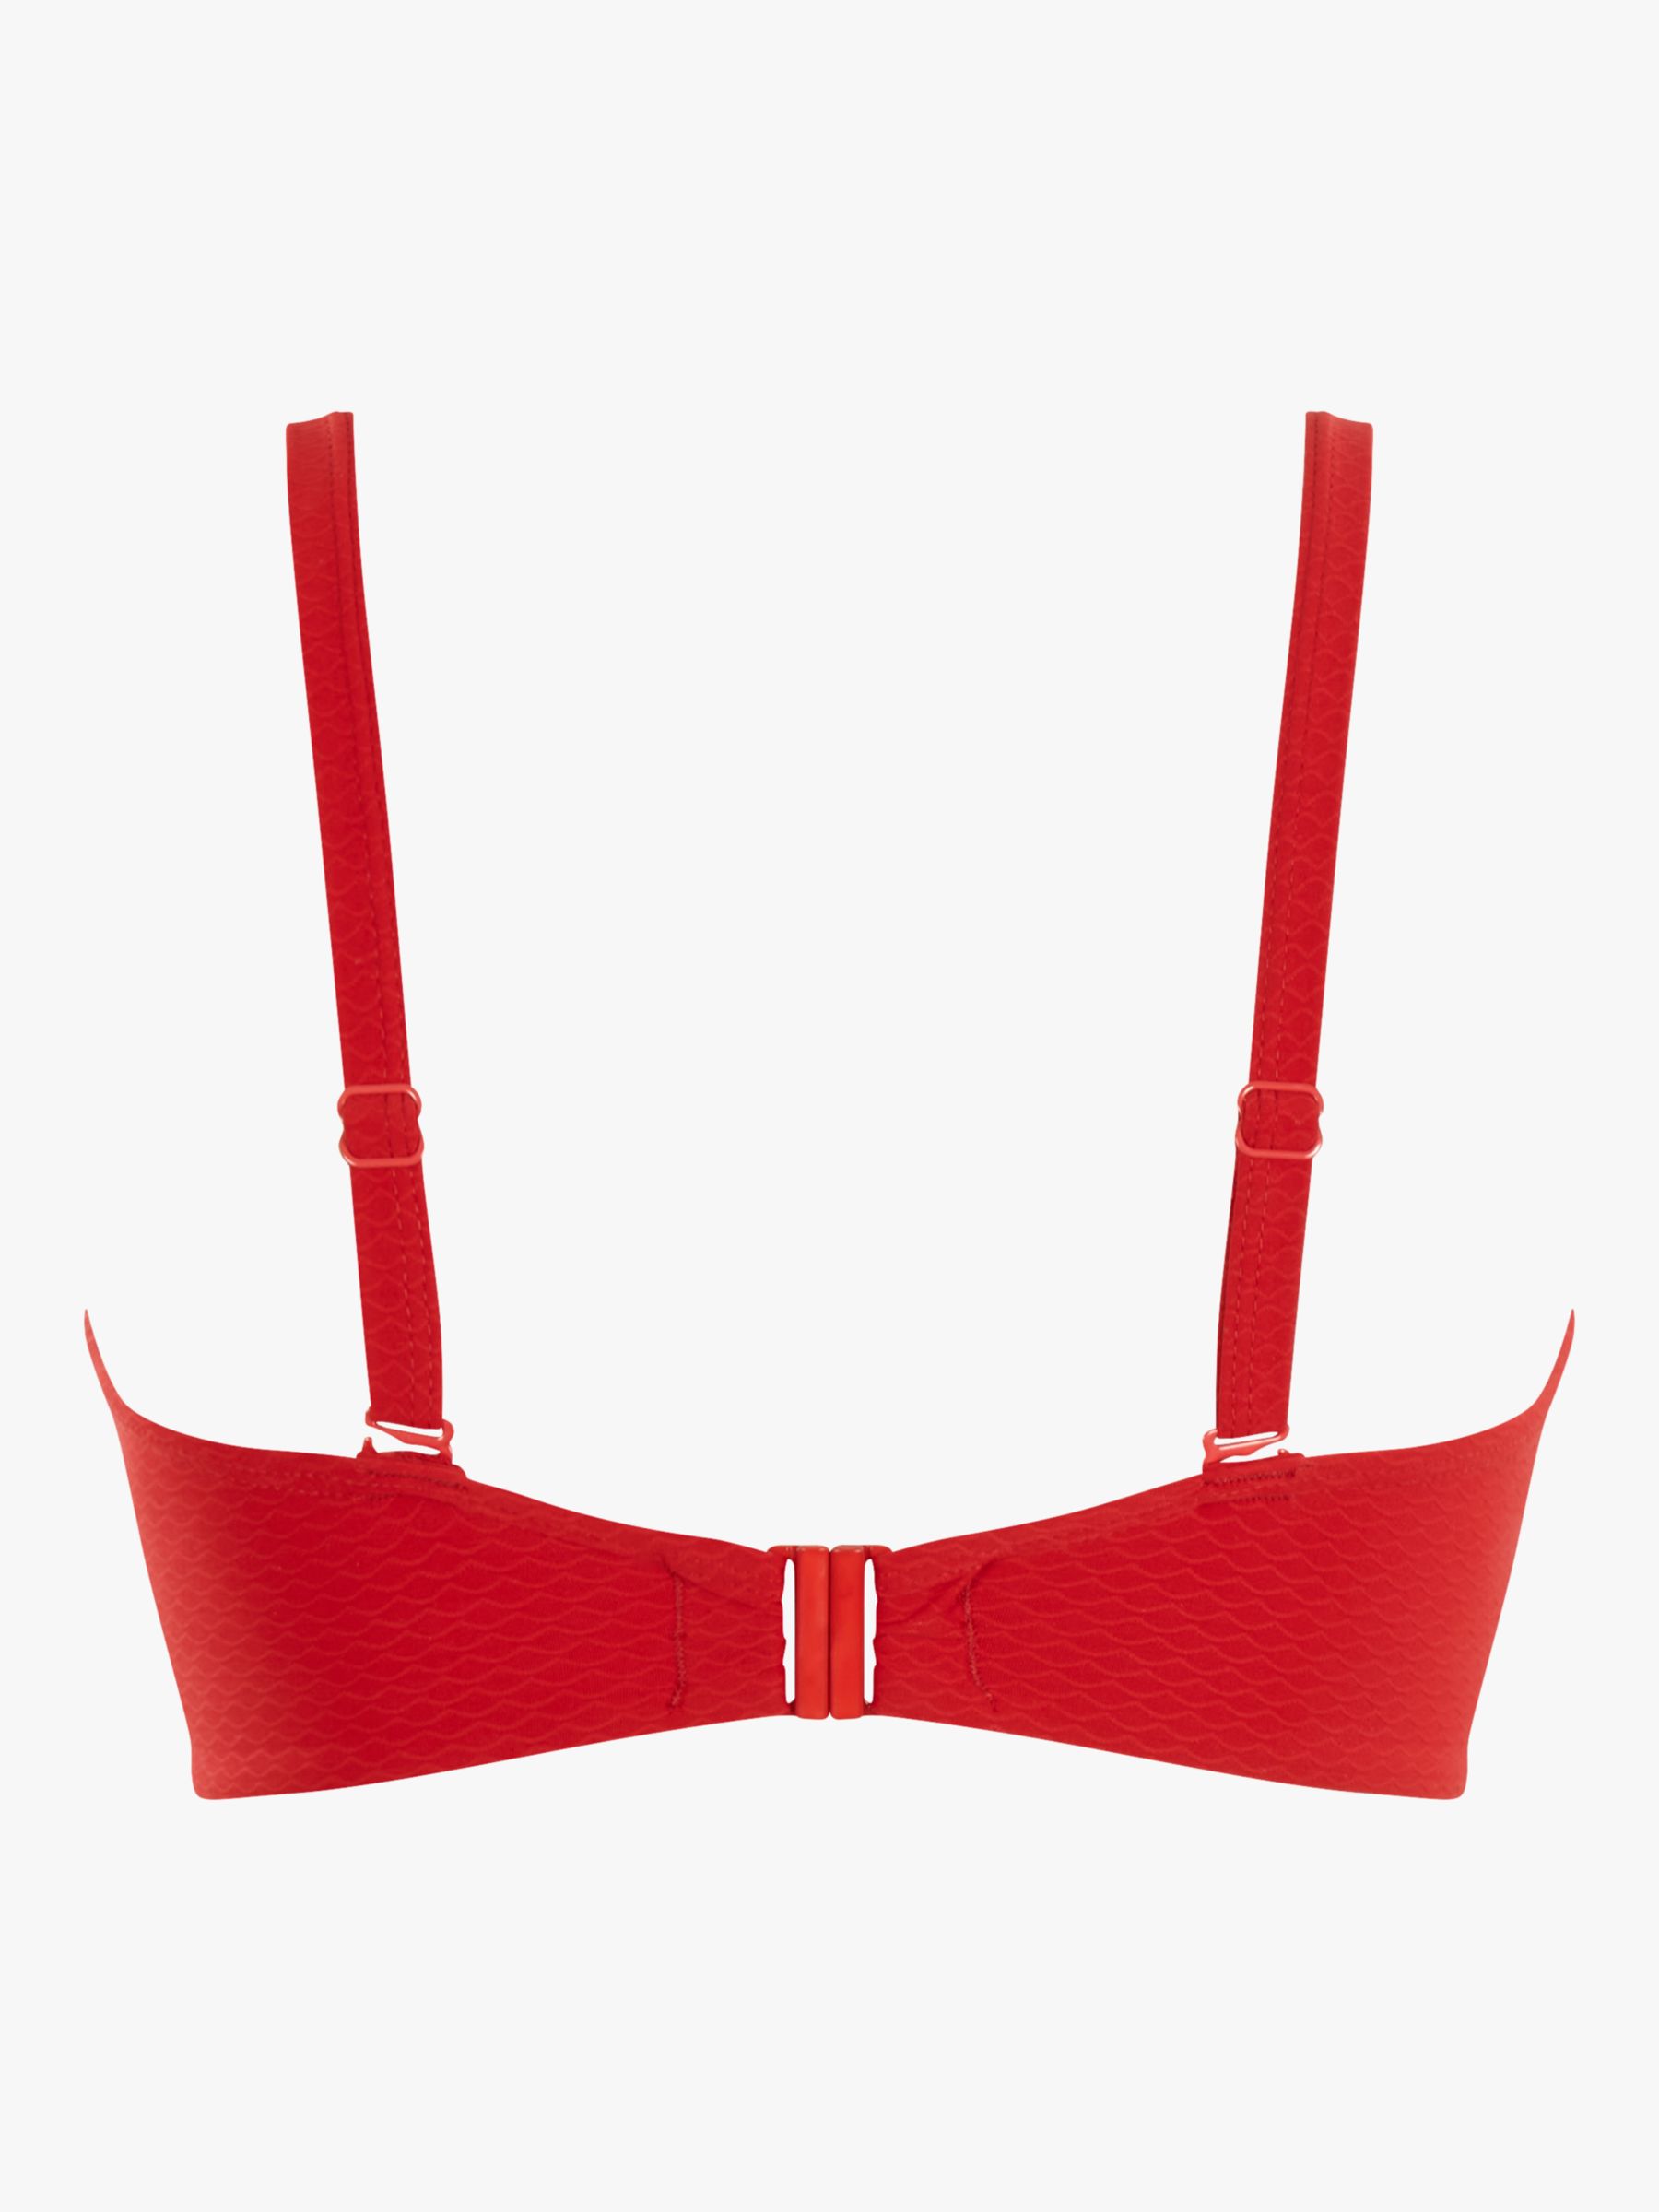 Panache Marianna Bandeau Bikini Top, Crimson, 32GG